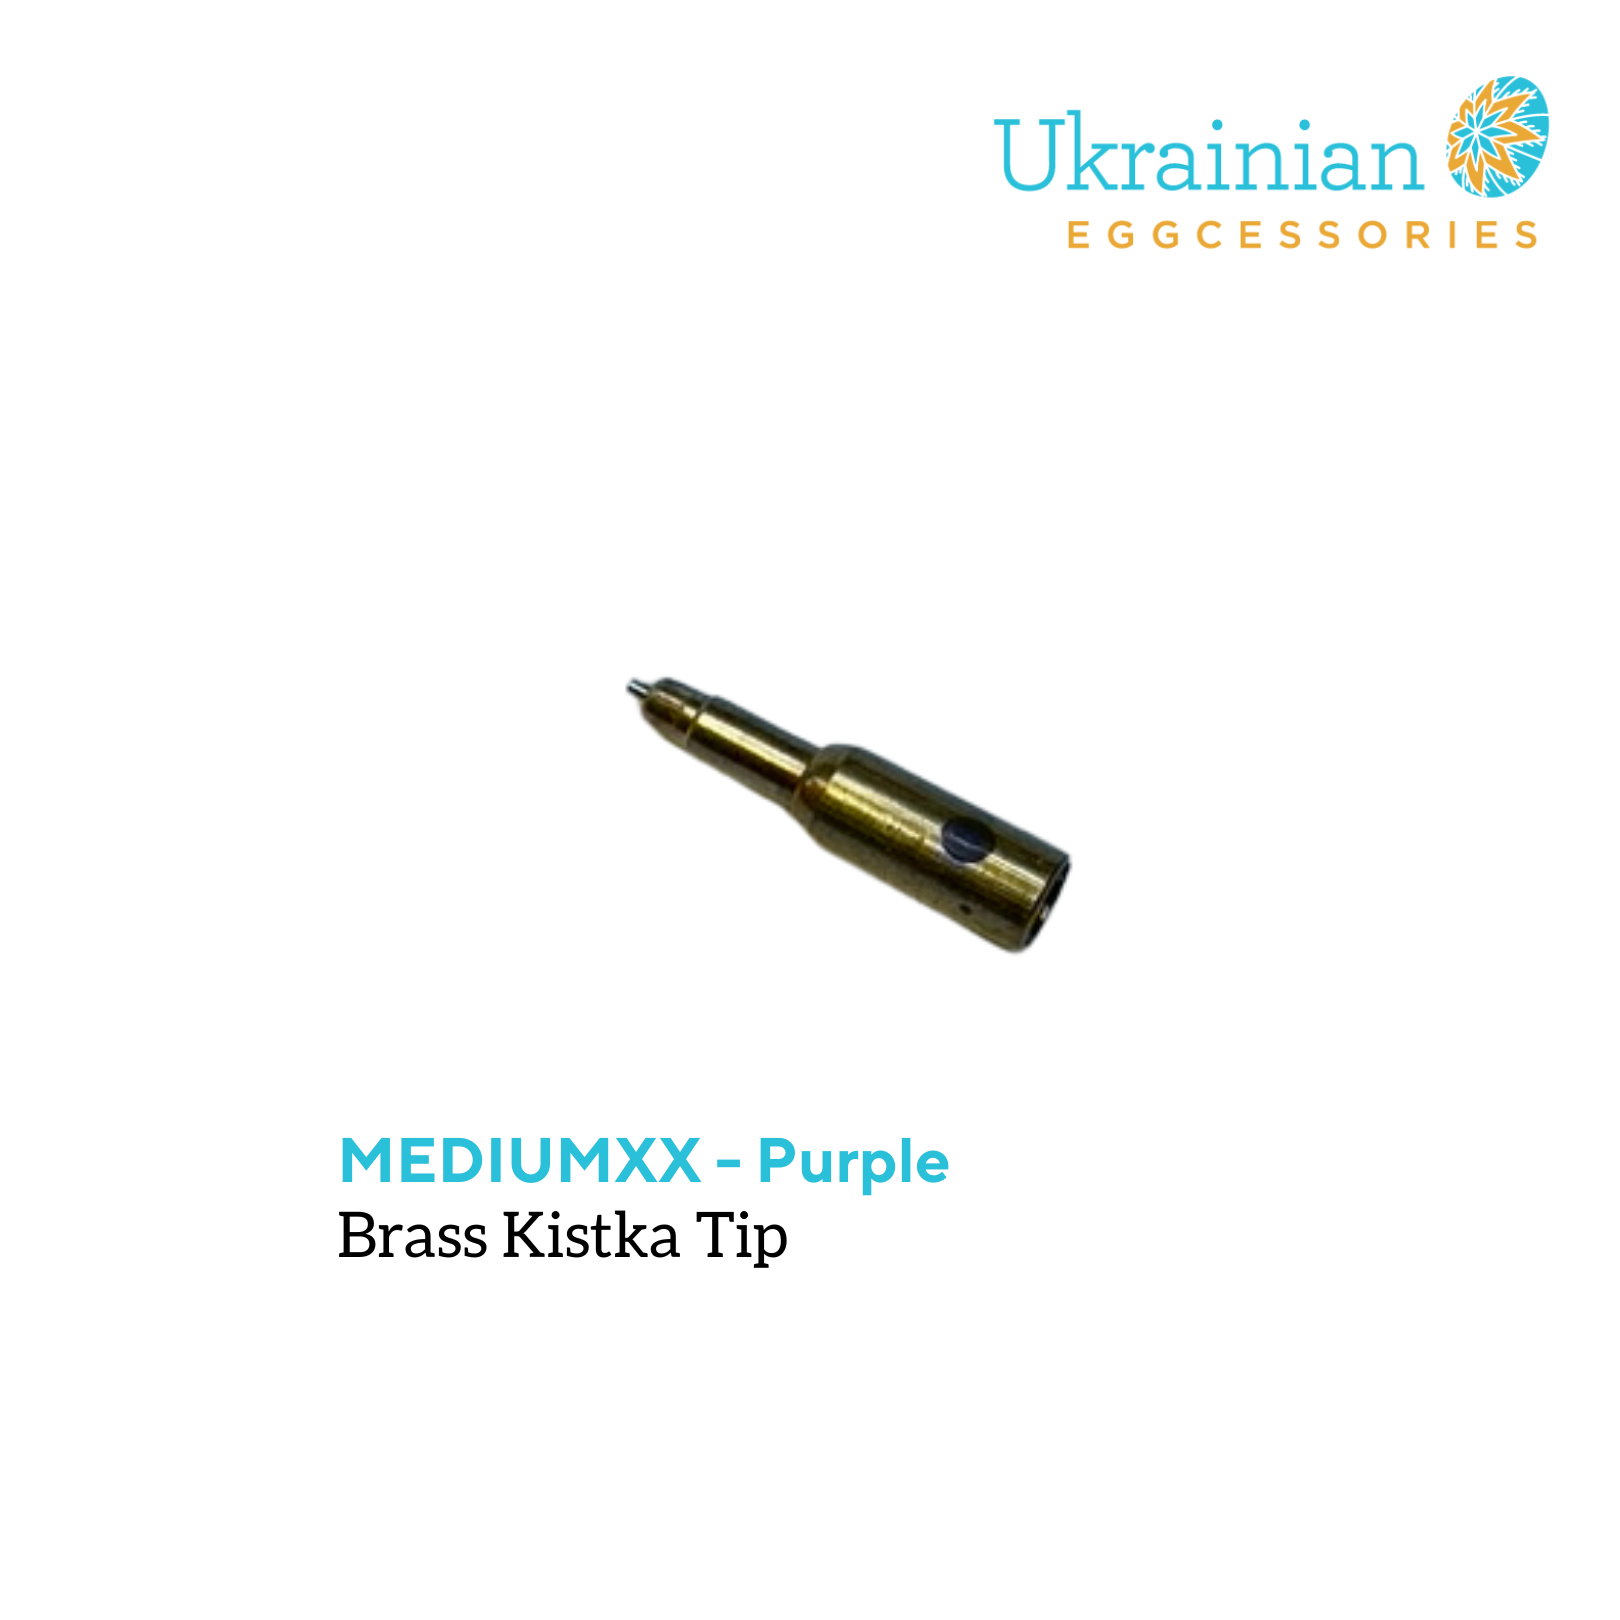 Brass Kistka Tip- #6 - MediumXX Tip